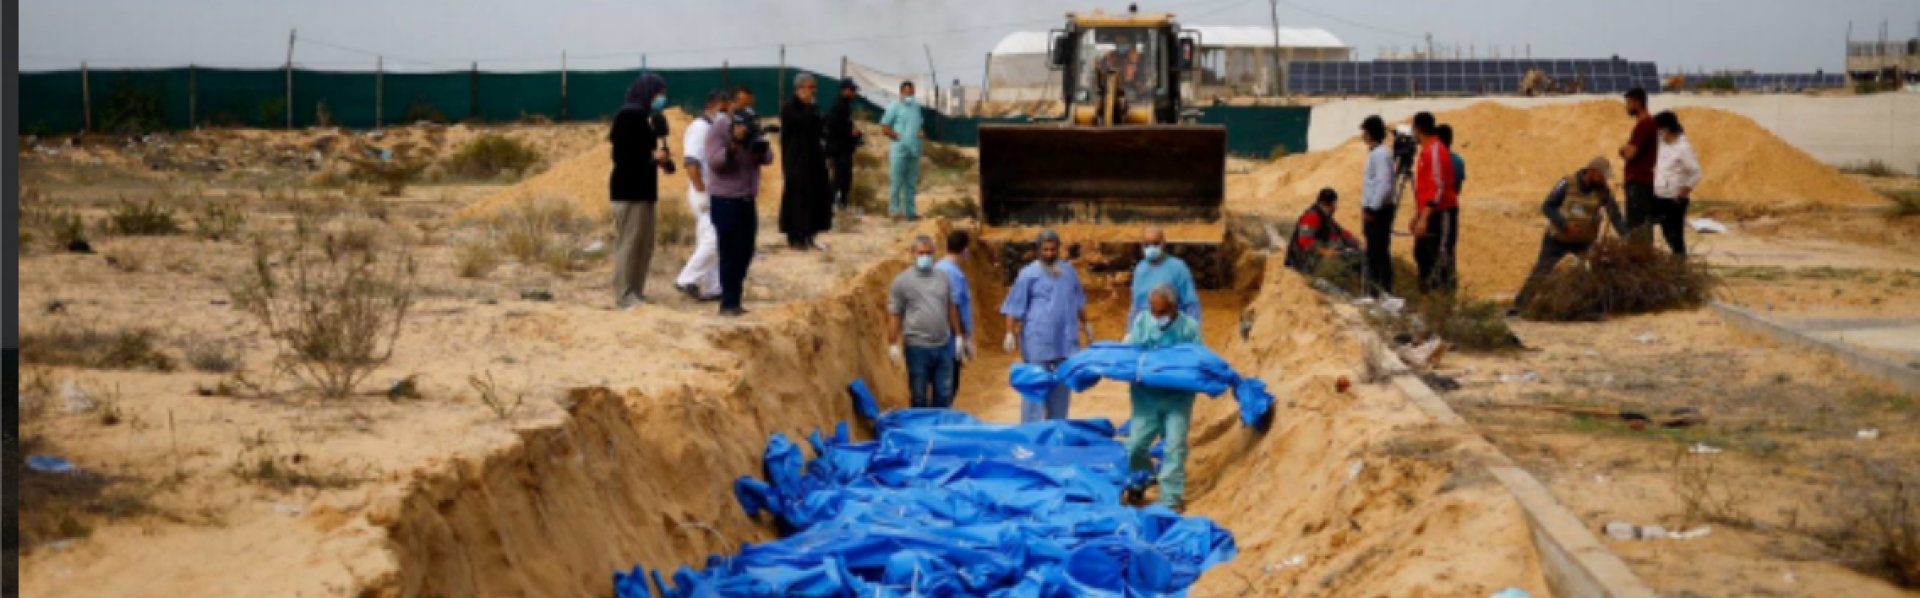 blauwe lijkzakken in een massagraf in Palestina